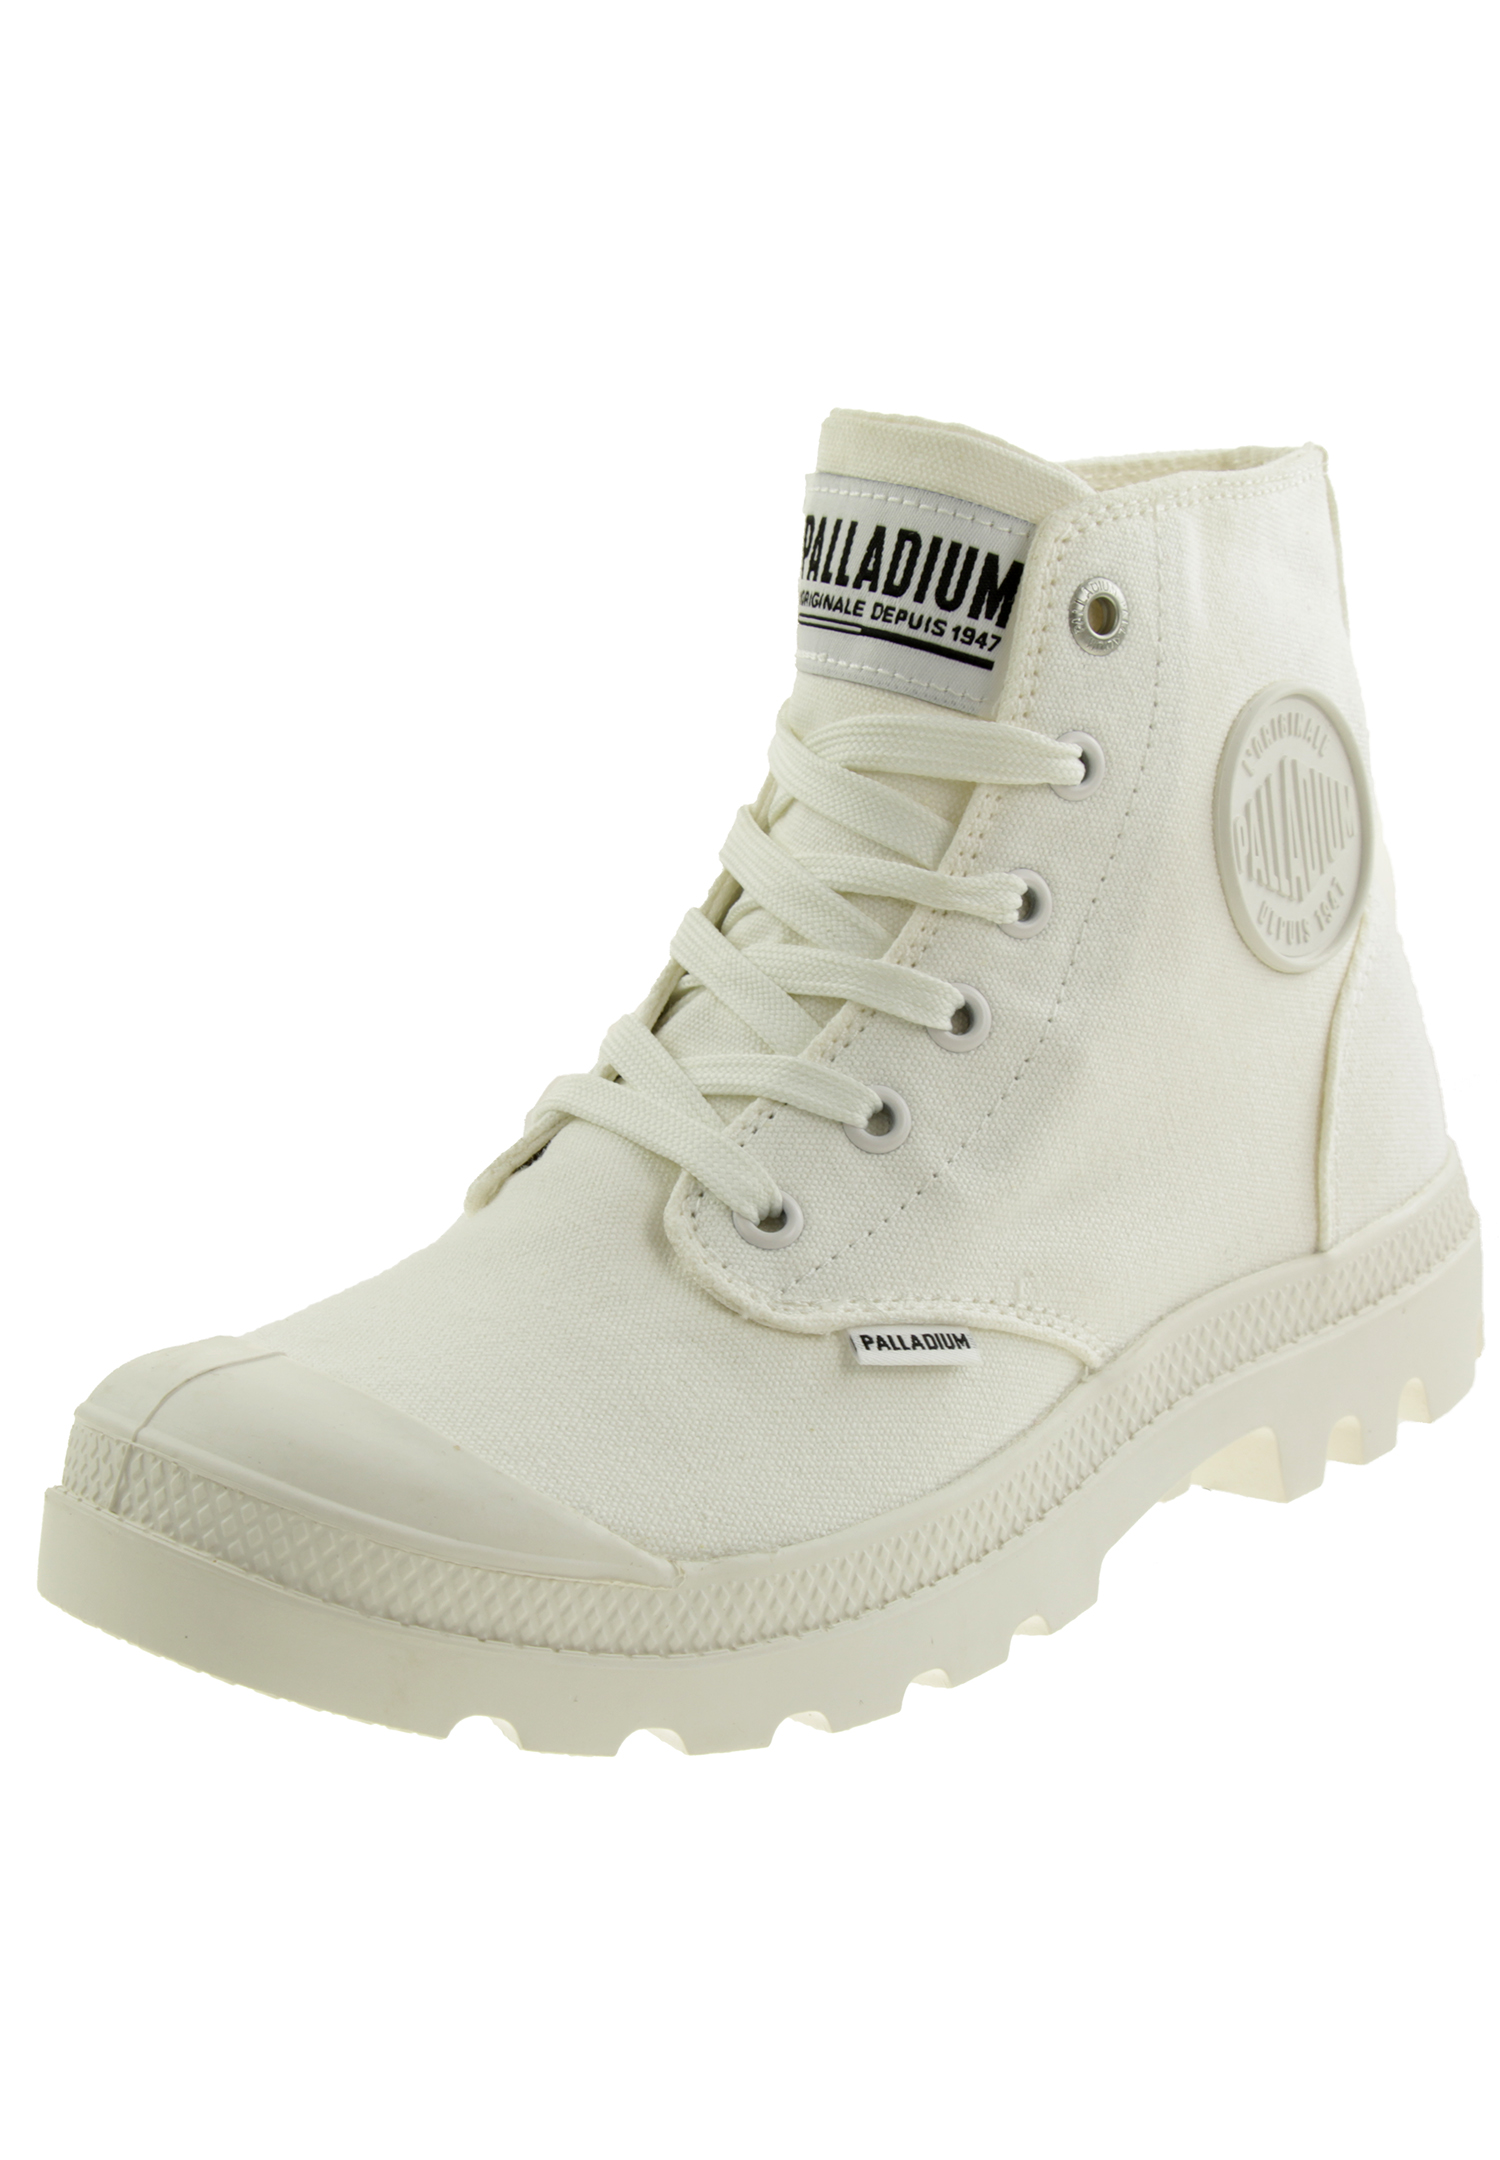 PALLADIUM Unisex Pampa Hi Mono Boots Stiefelette 73089 Weiß